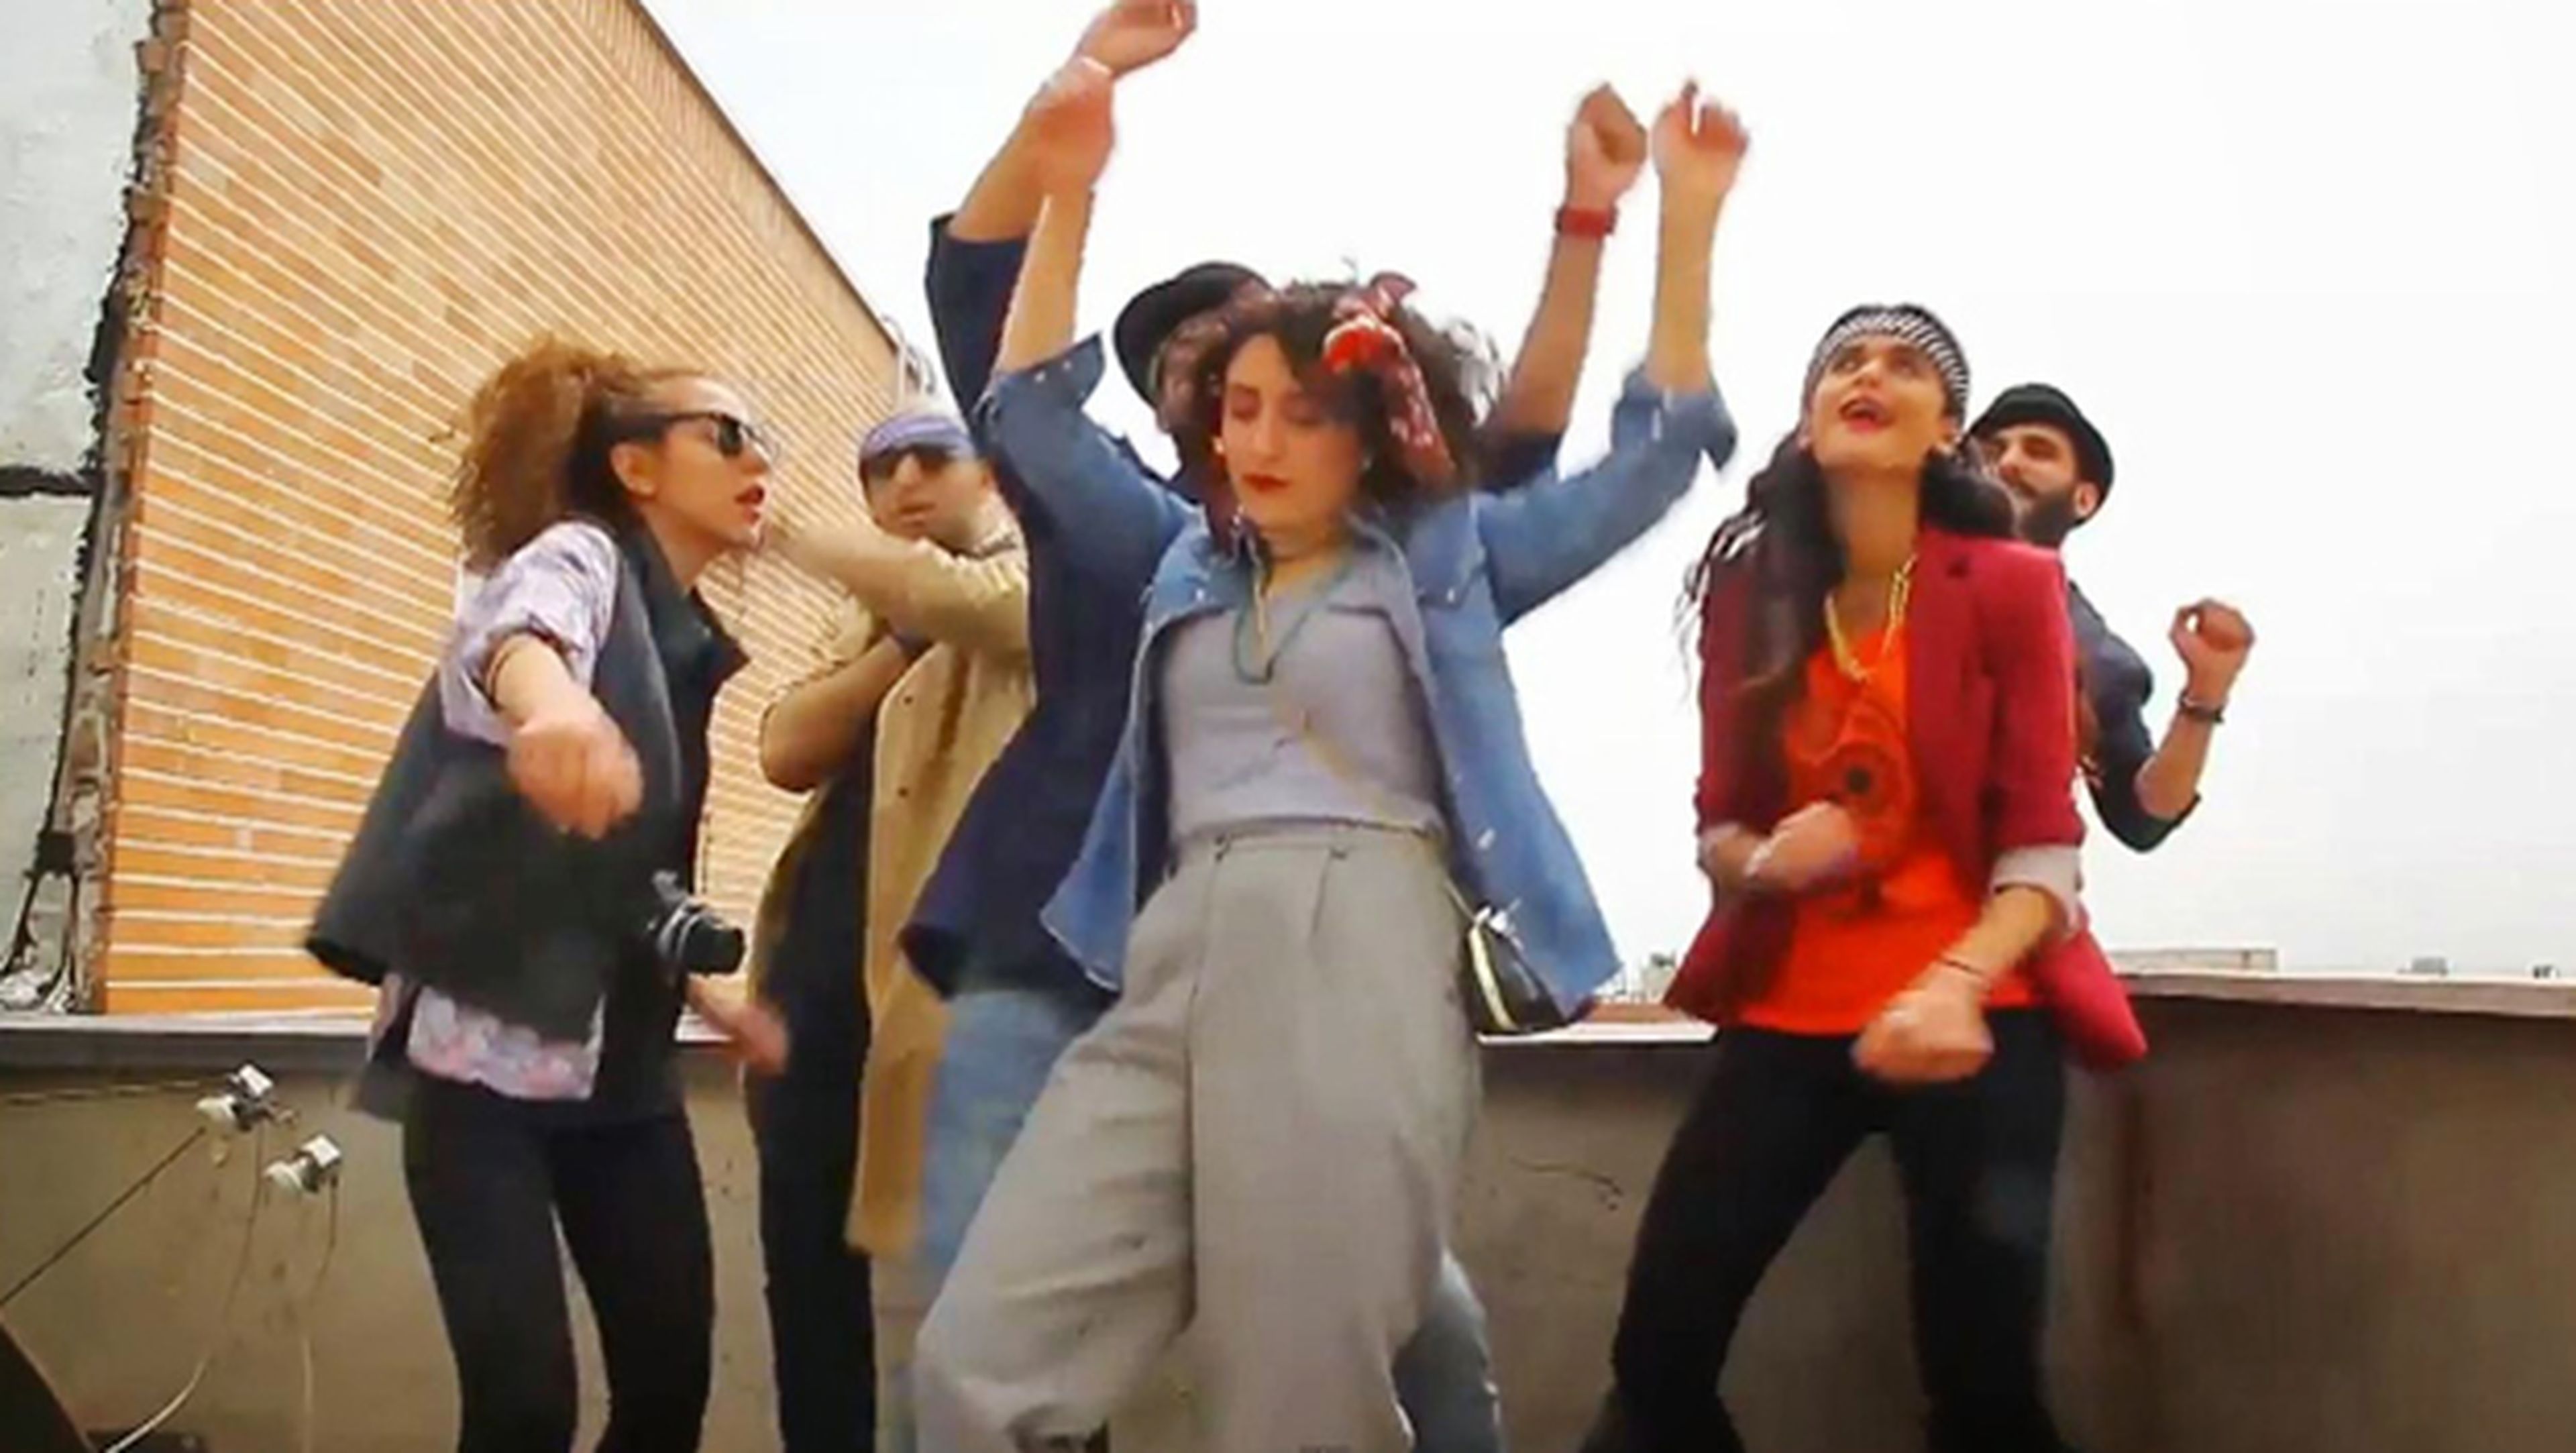 Jóvenes iraníes bailando en un vídeo la canción "Happy" de Pharrell Williams